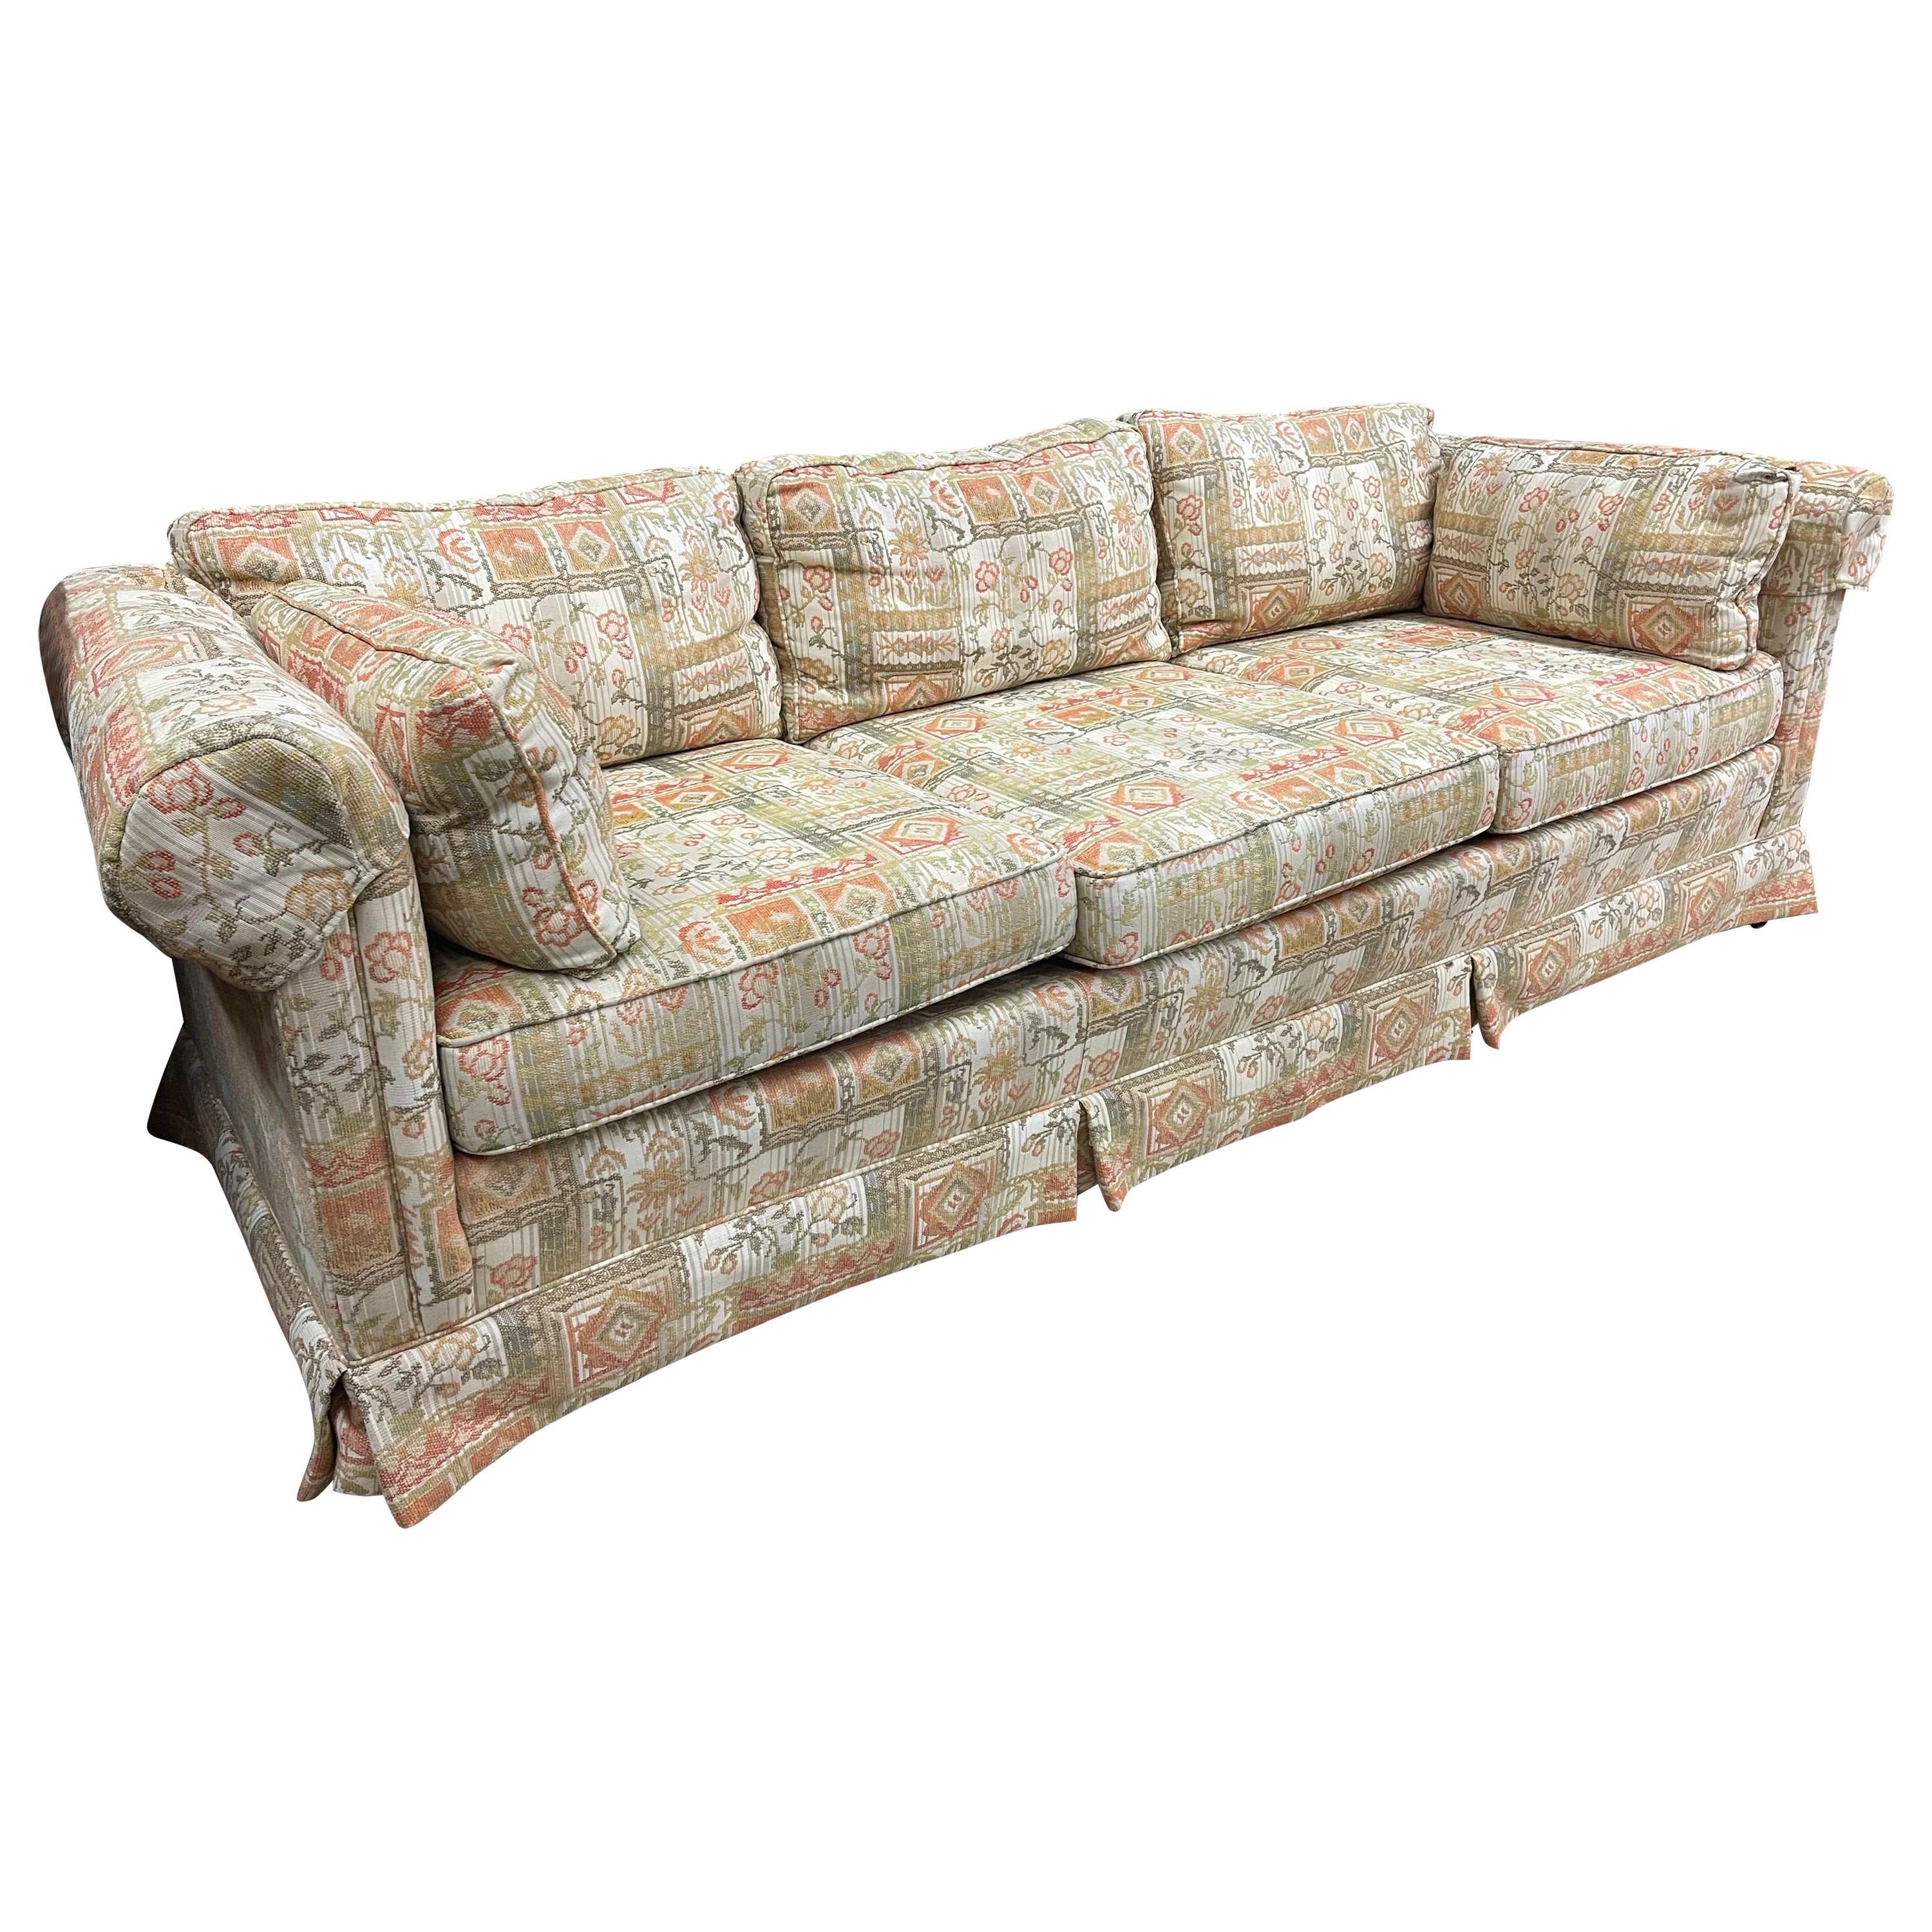 Vintage Drexel Sofa For At 1stdibs